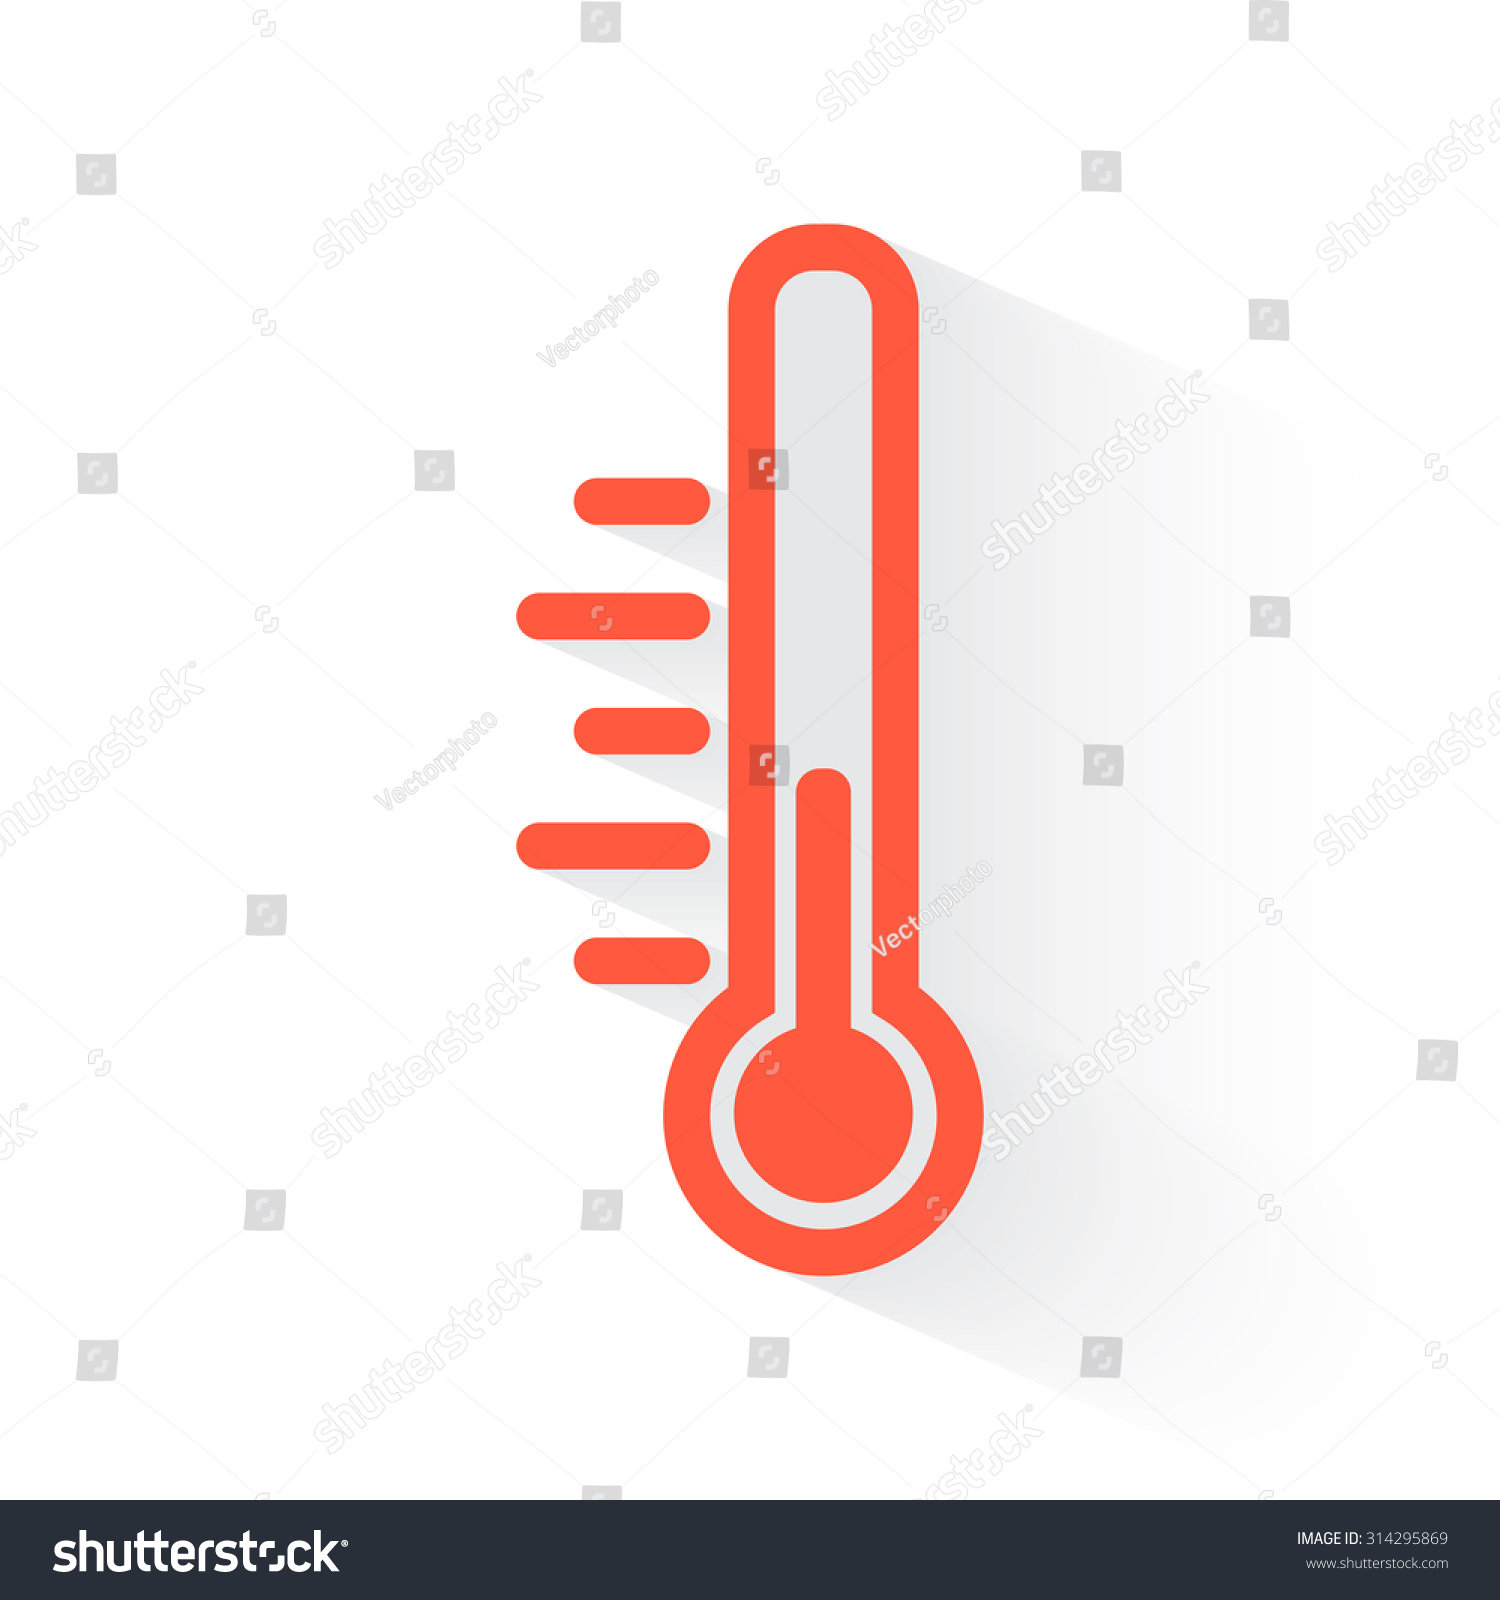 Temperature sign photo